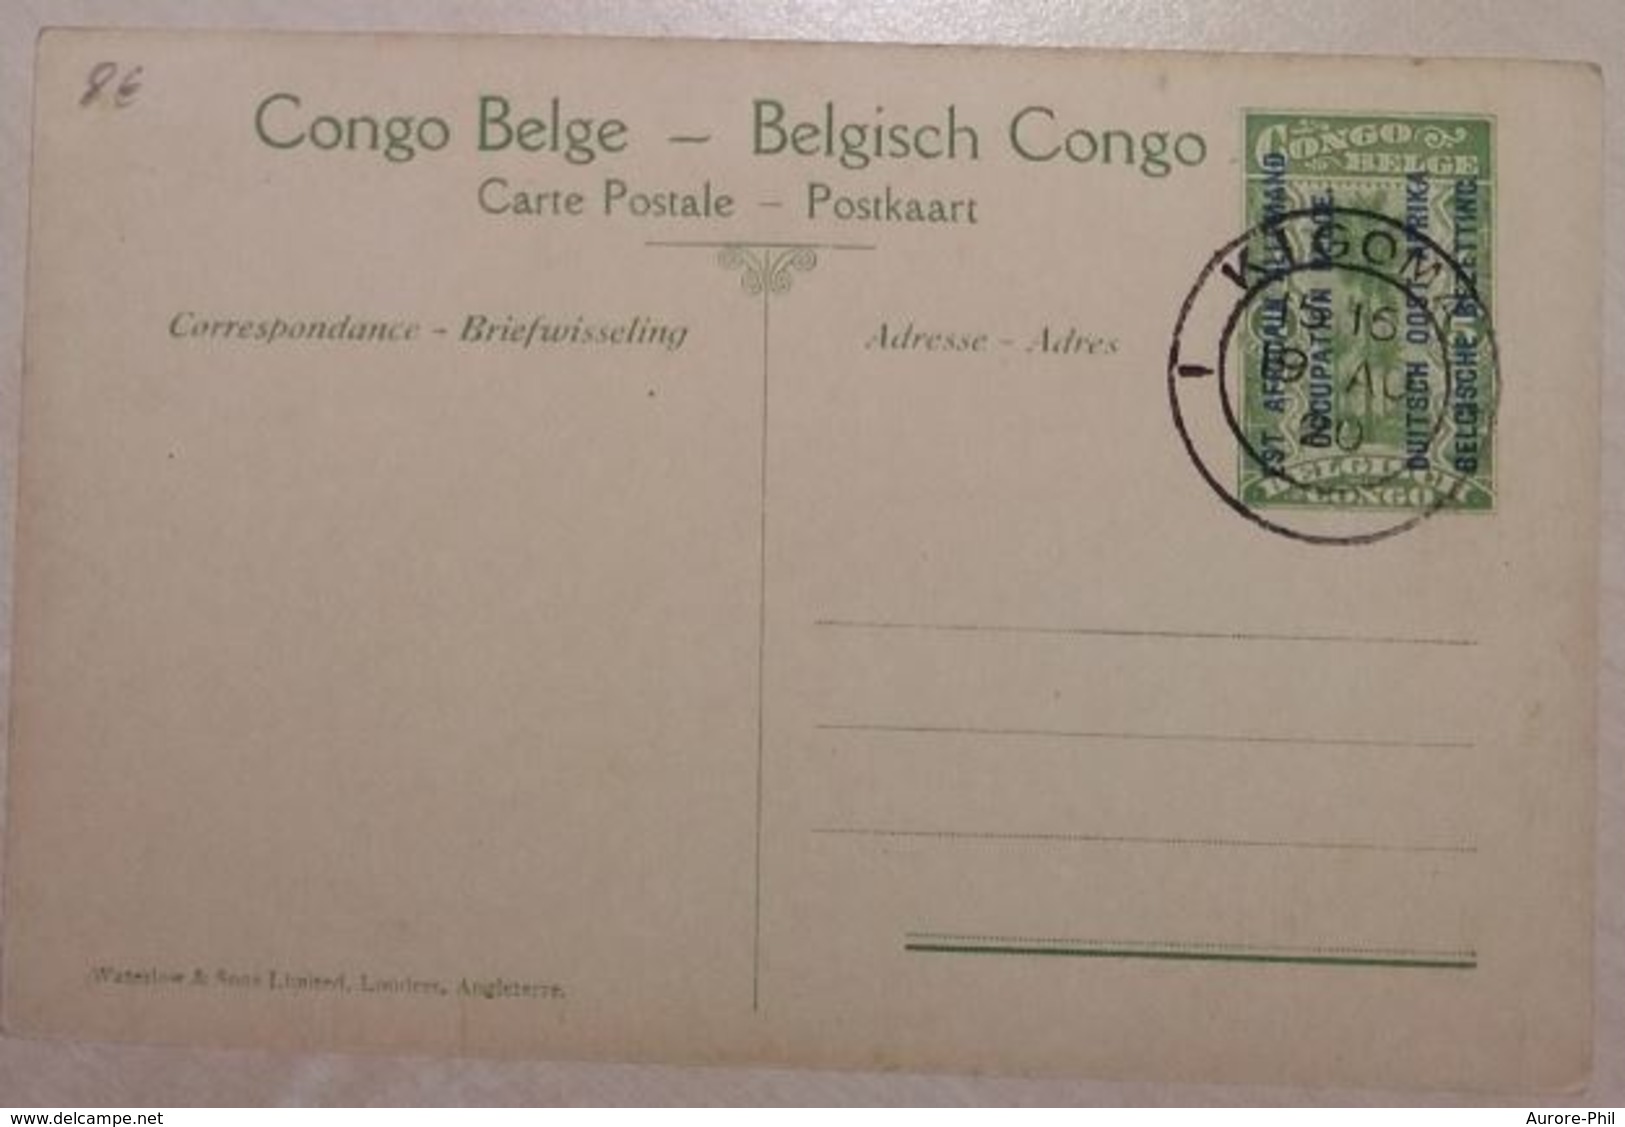 Congo Belge - Entier Postal Nr. 45 - Est Africain Allemand Occupation Belge Pont De Fortune Sur La Luvone - Entiers Postaux